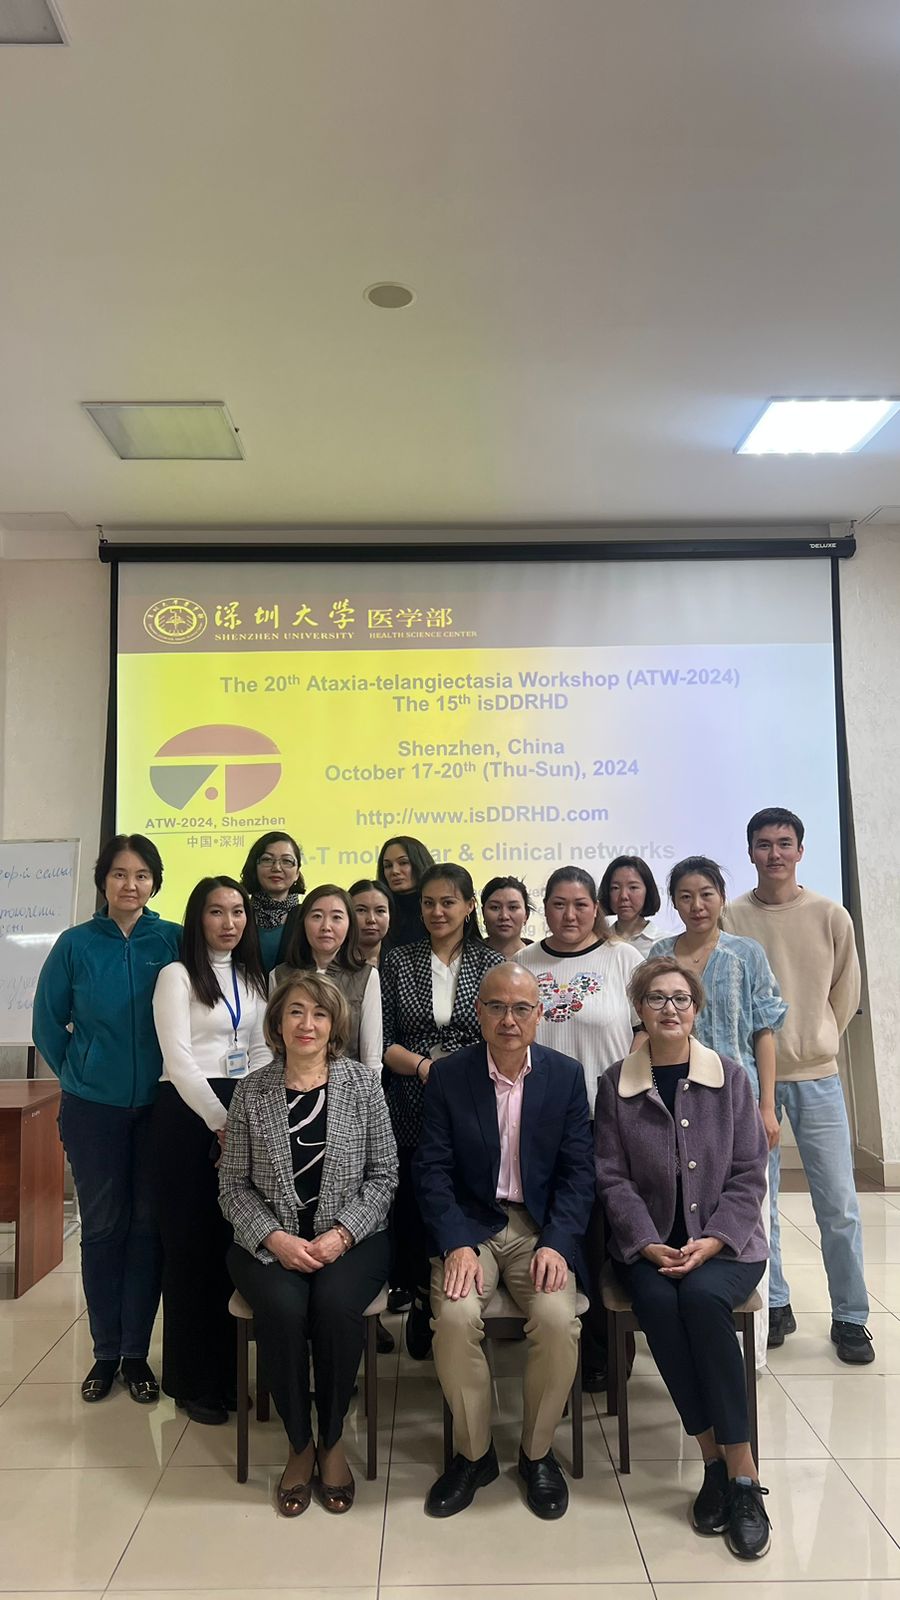 Лидерская лекция декана Школы медицины Шэньчжэньского университета